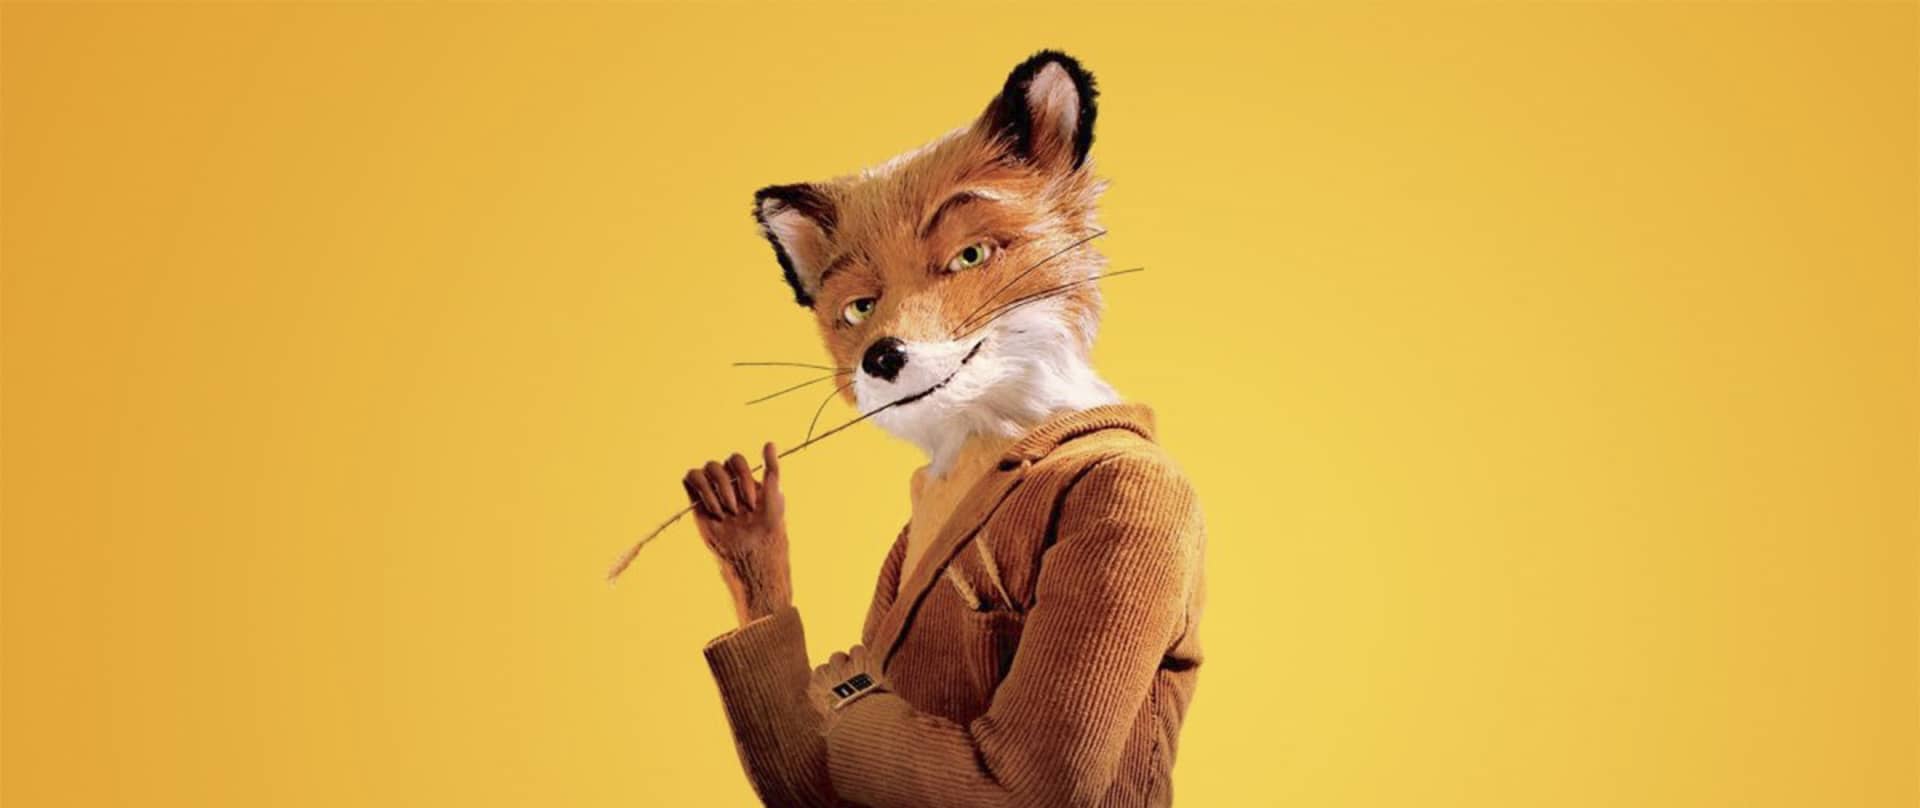 Mr. fox vest